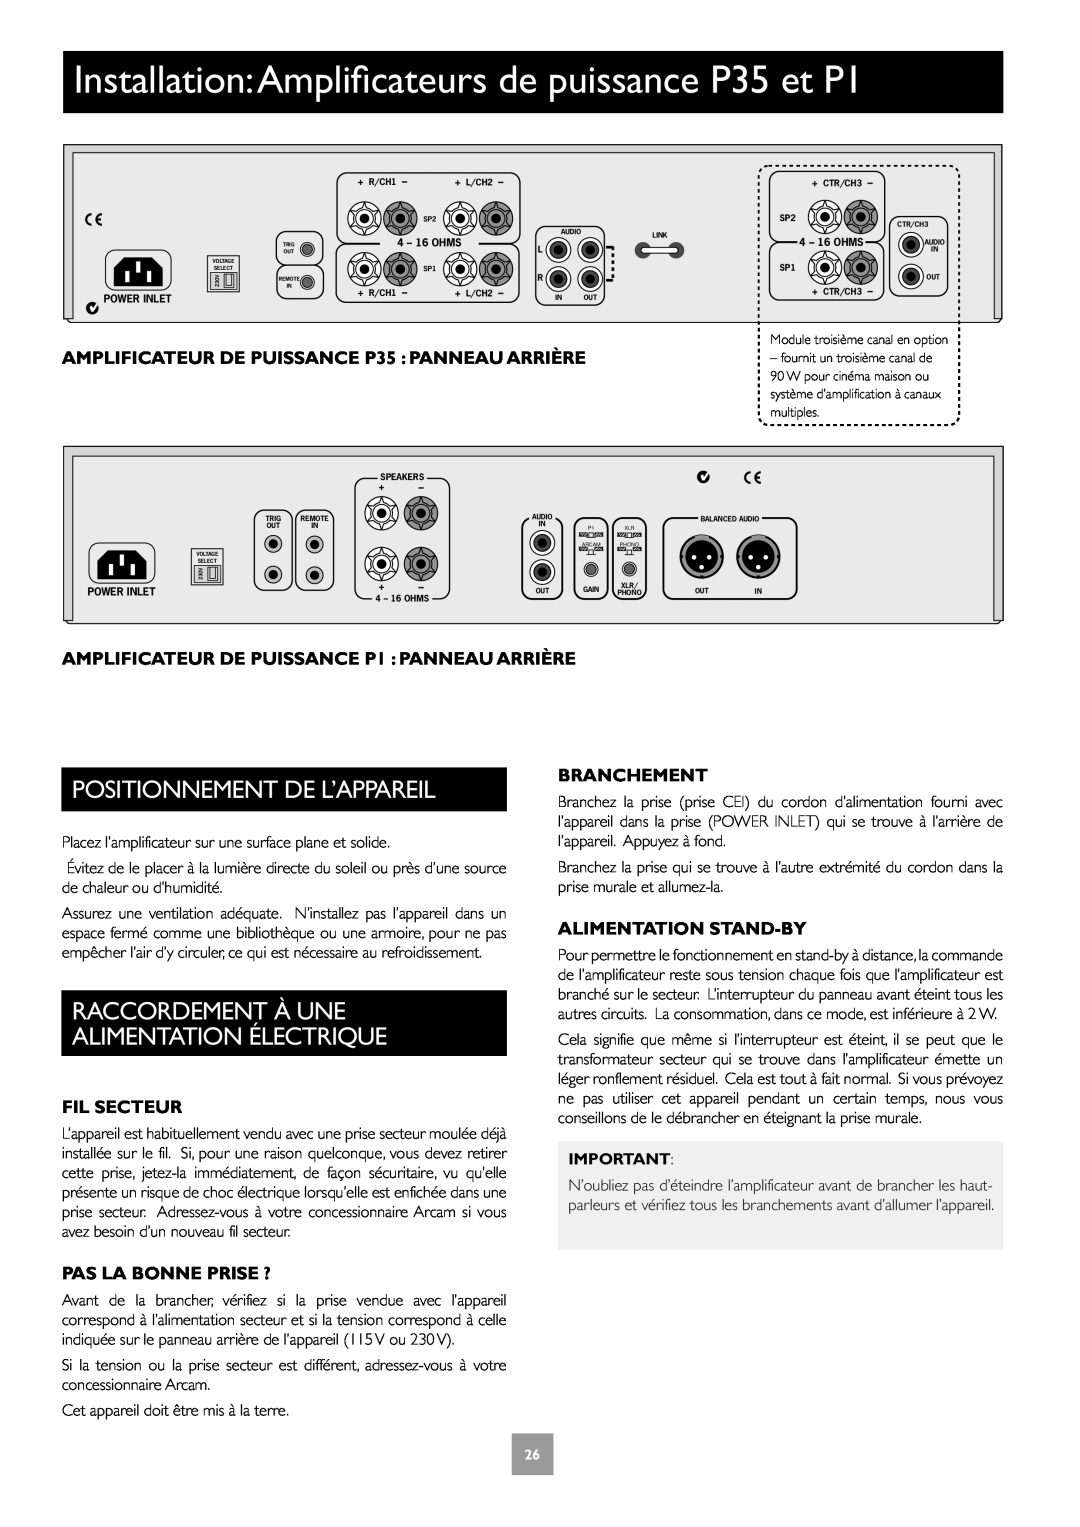 Arcam C30 manual AMPLIFICATEUR DE PUISSANCE P35 PANNEAU ARRIÈRE, AMPLIFICATEUR DE PUISSANCE P1 PANNEAU ARRIÈRE, Fil Secteur 